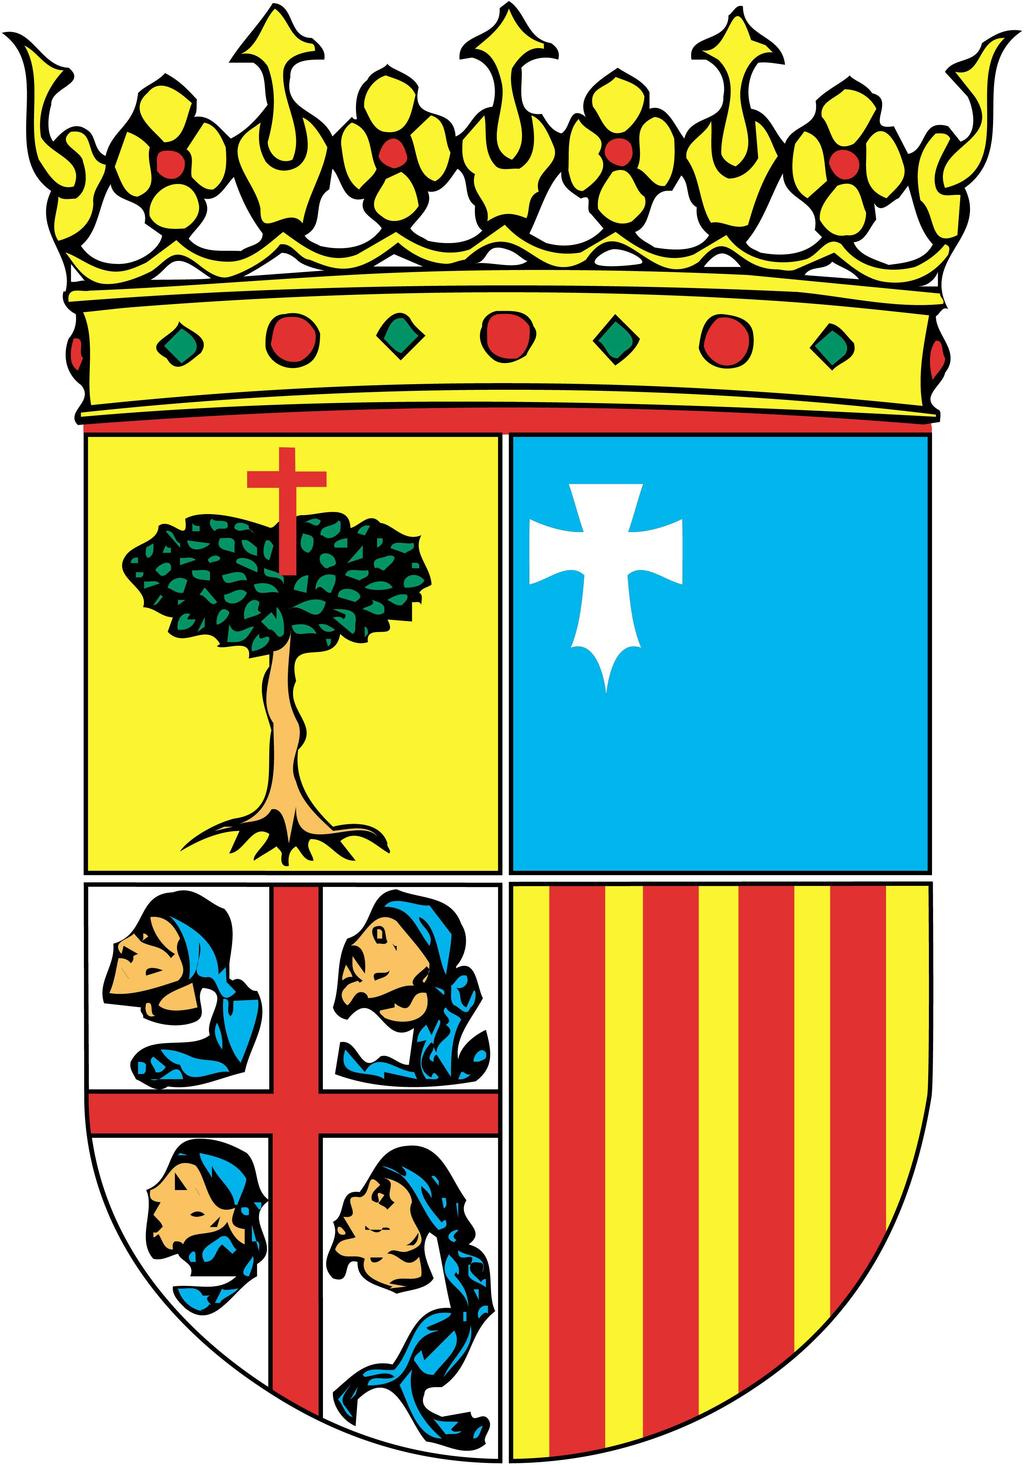 RE 066/2013 Acuerdo 72/2013, de 11 de diciembre de 2013, del Tribunal Administrativo de Contratos Públicos de Aragón, relativo a la ejecución de su Acuerdo 52/2013, de 11 de septiembre de 2013, por